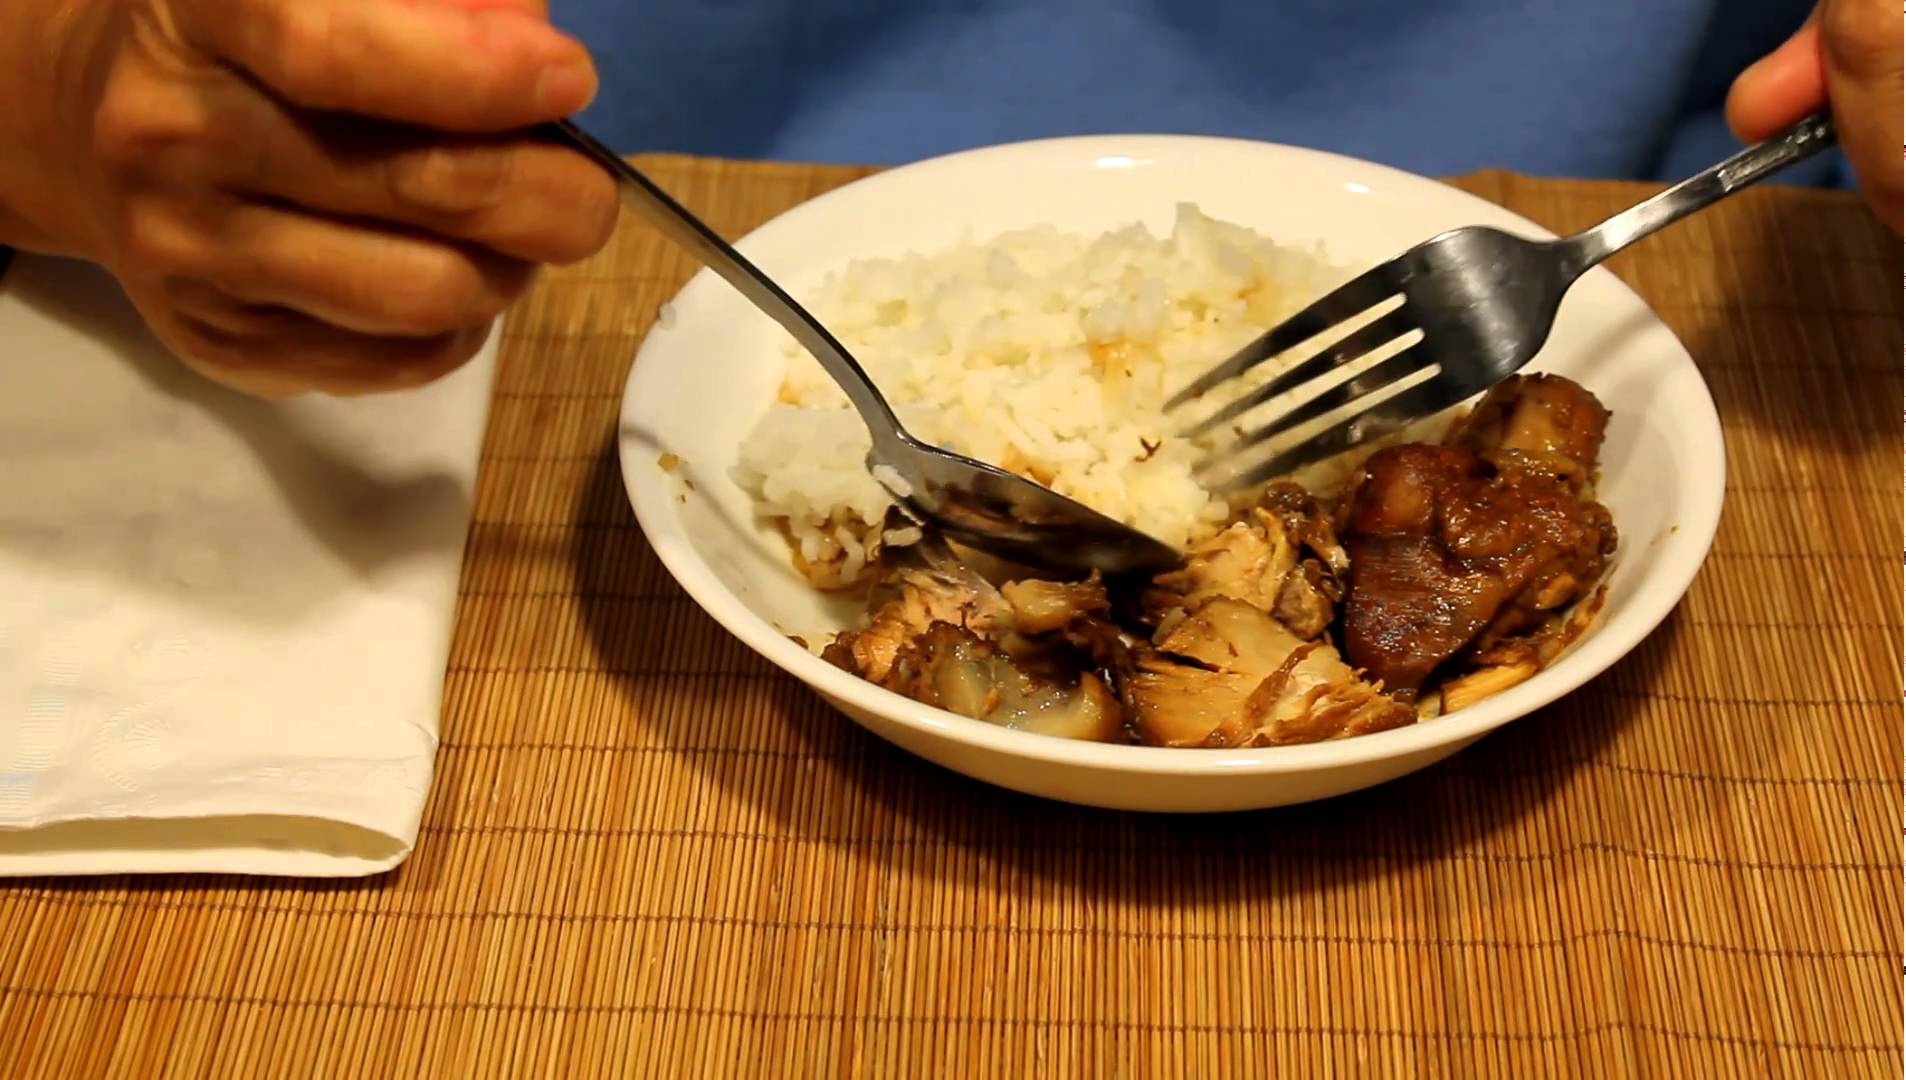 Как едят суп по этикету. Вилки для еды. Что китайцы едят вилками и ложками. Блюдо для еды вилкой и ножом. Еда с вилкой и ножом.